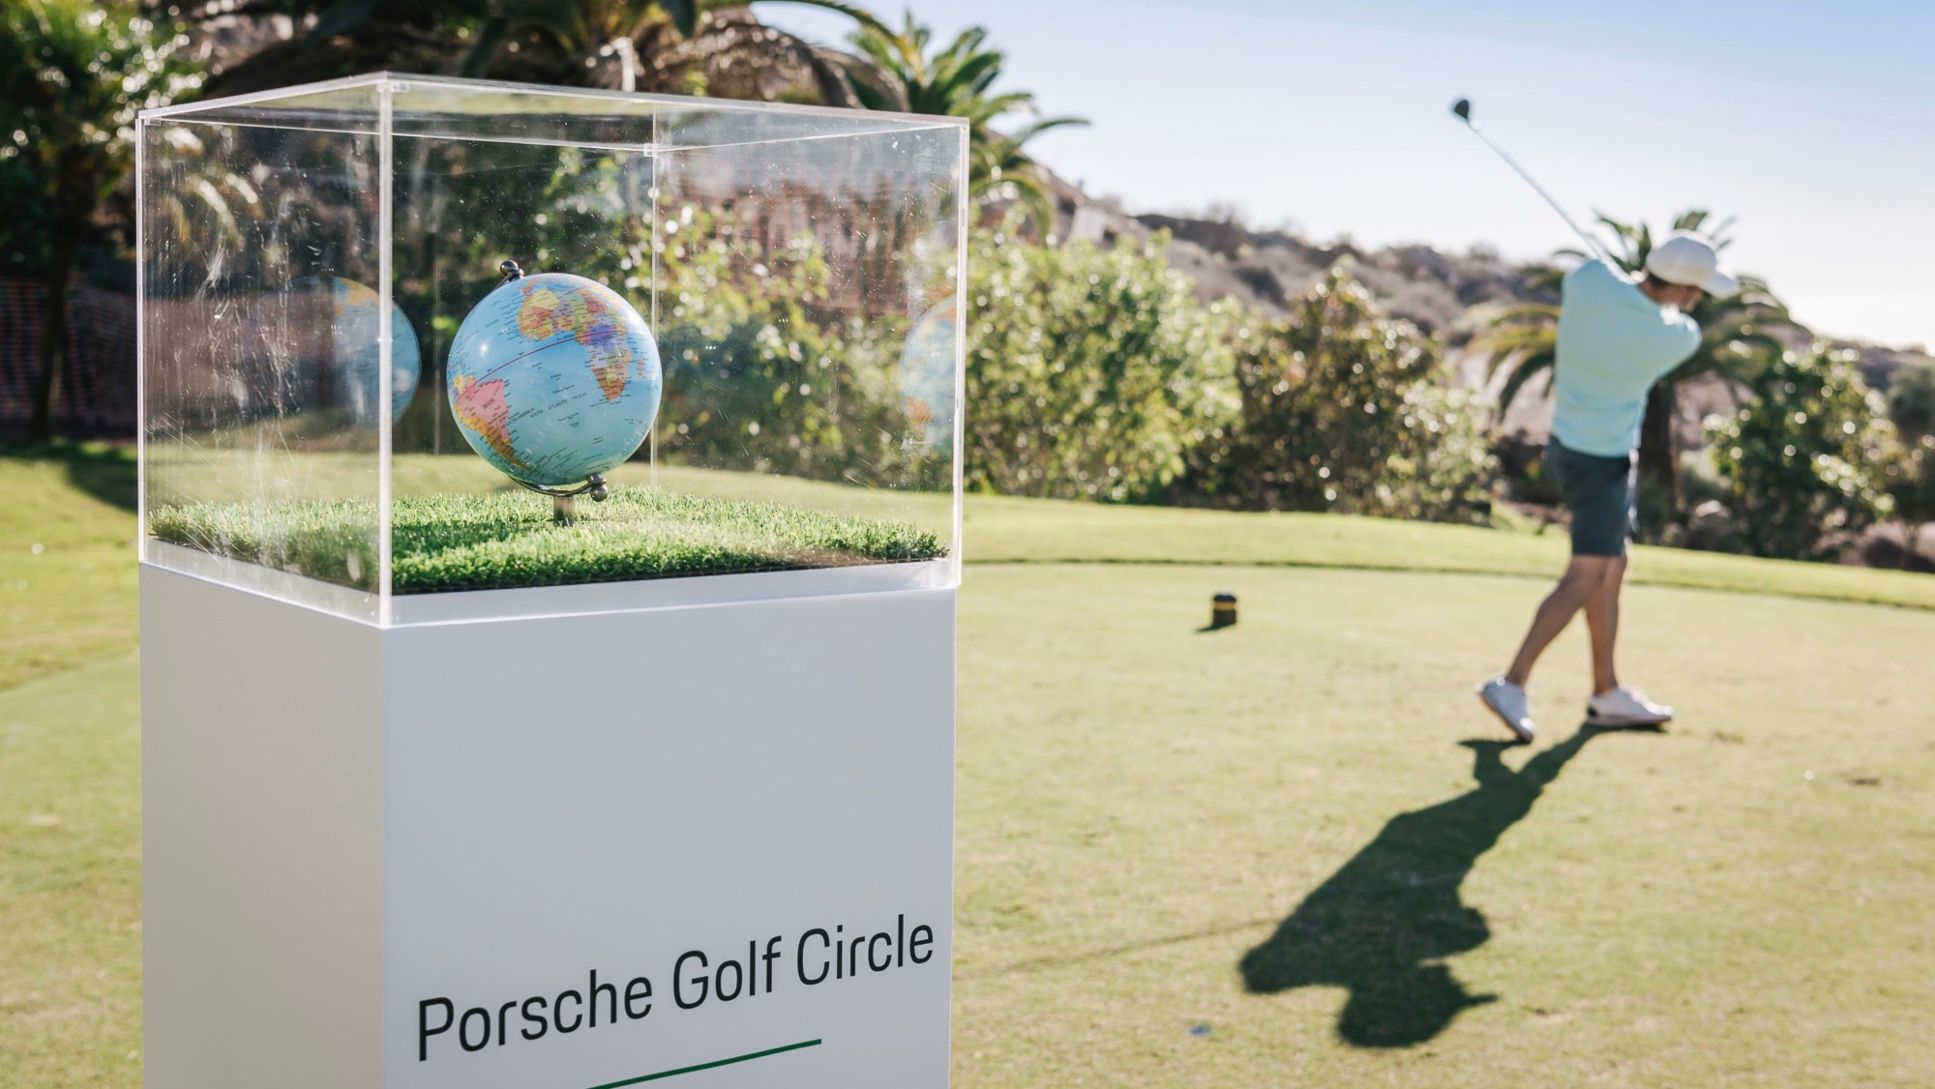 Porsche Golf Circle, Abama Golf Resort, Teneriffa, 2018, Porsche AG